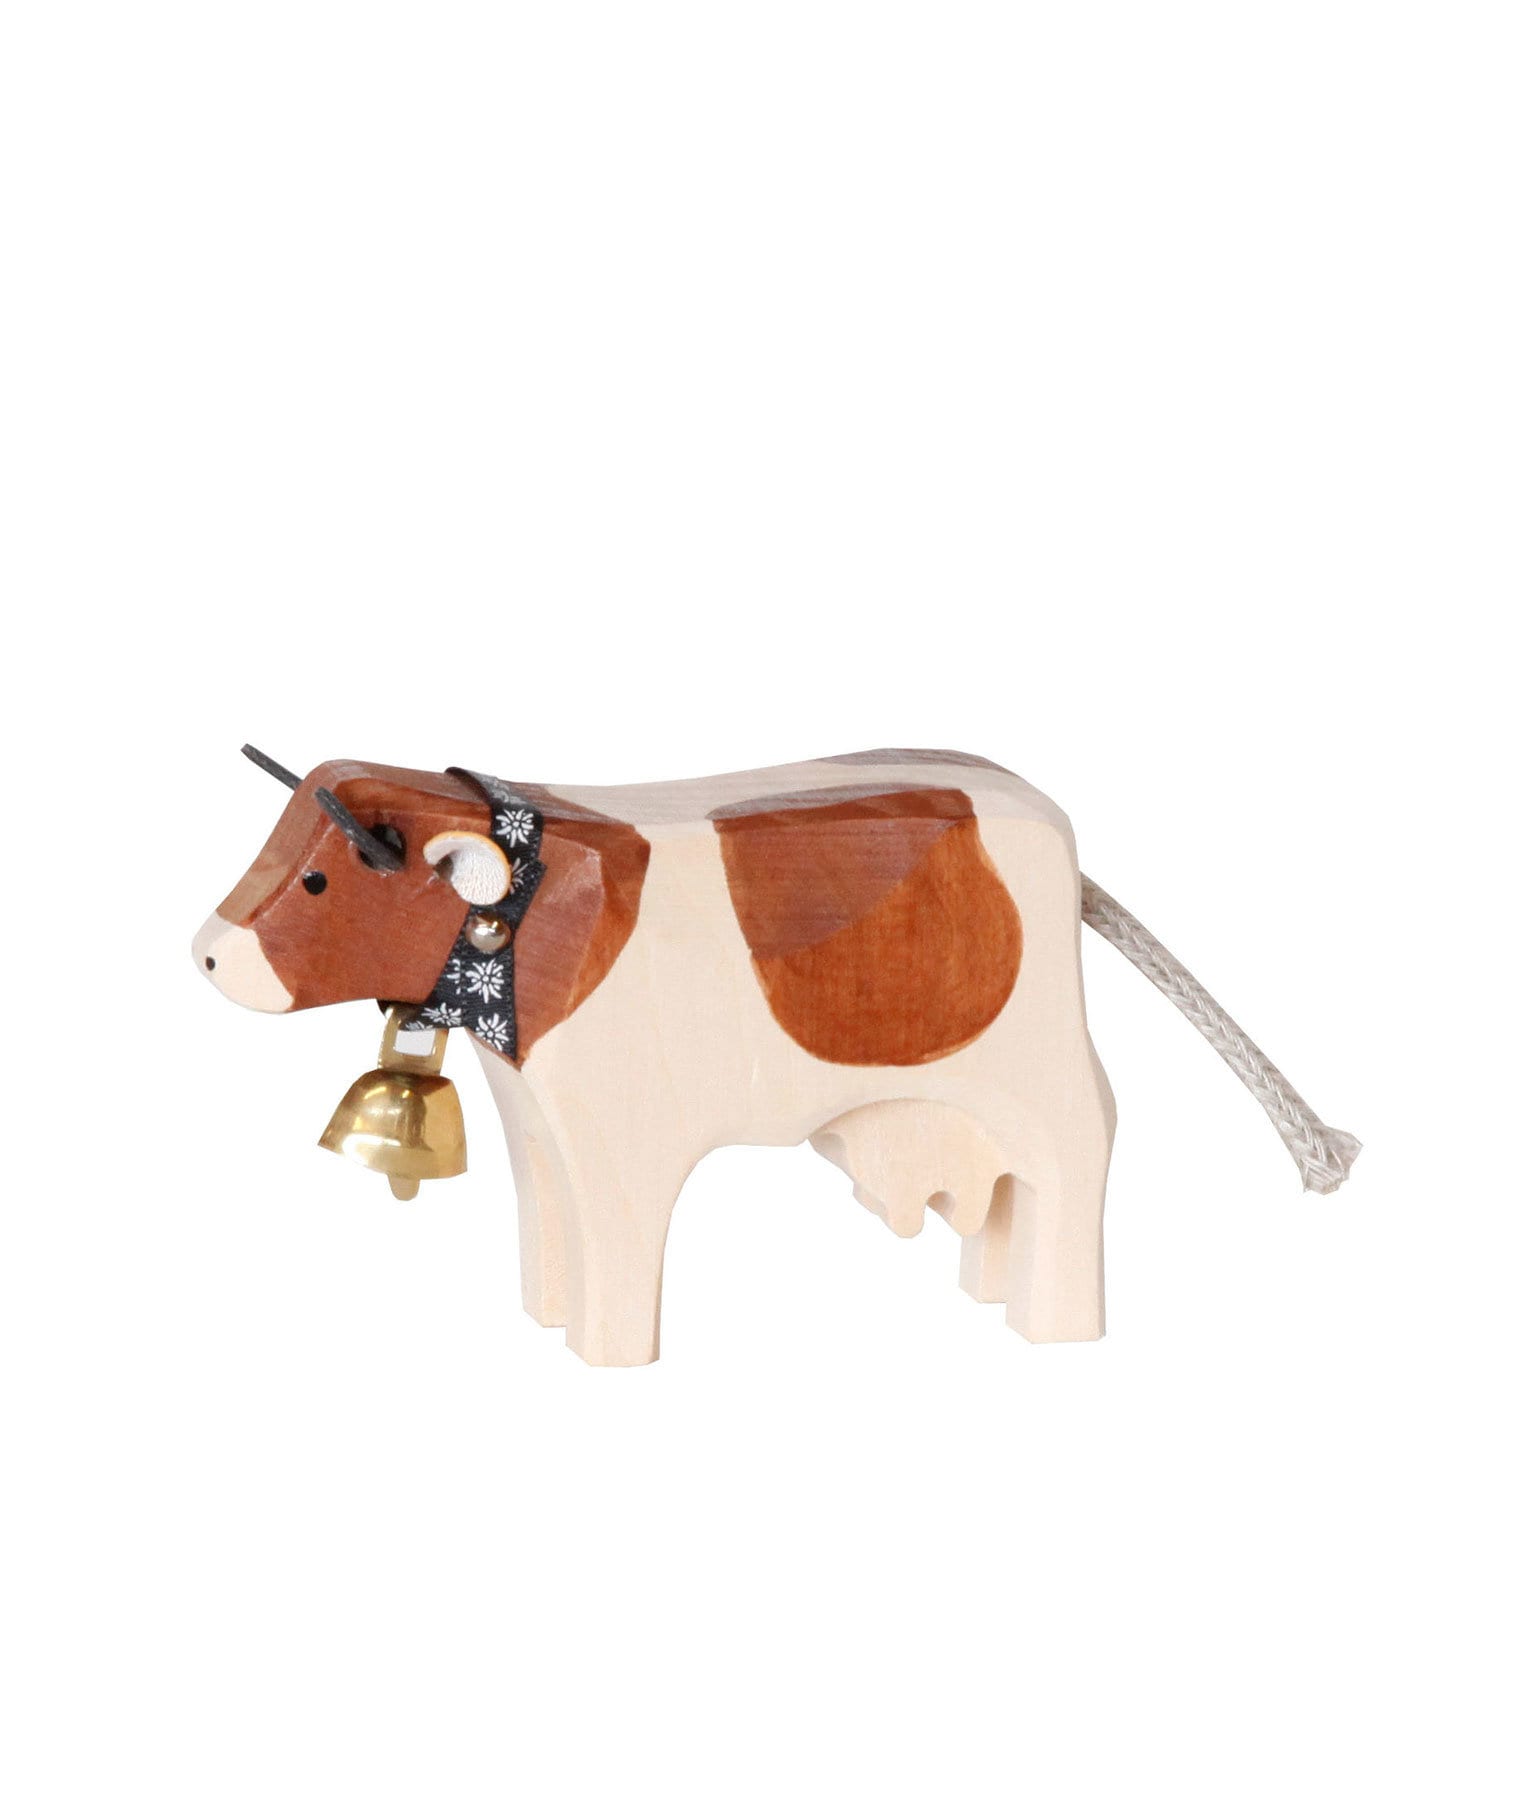 Wooden Cow Red Holstein